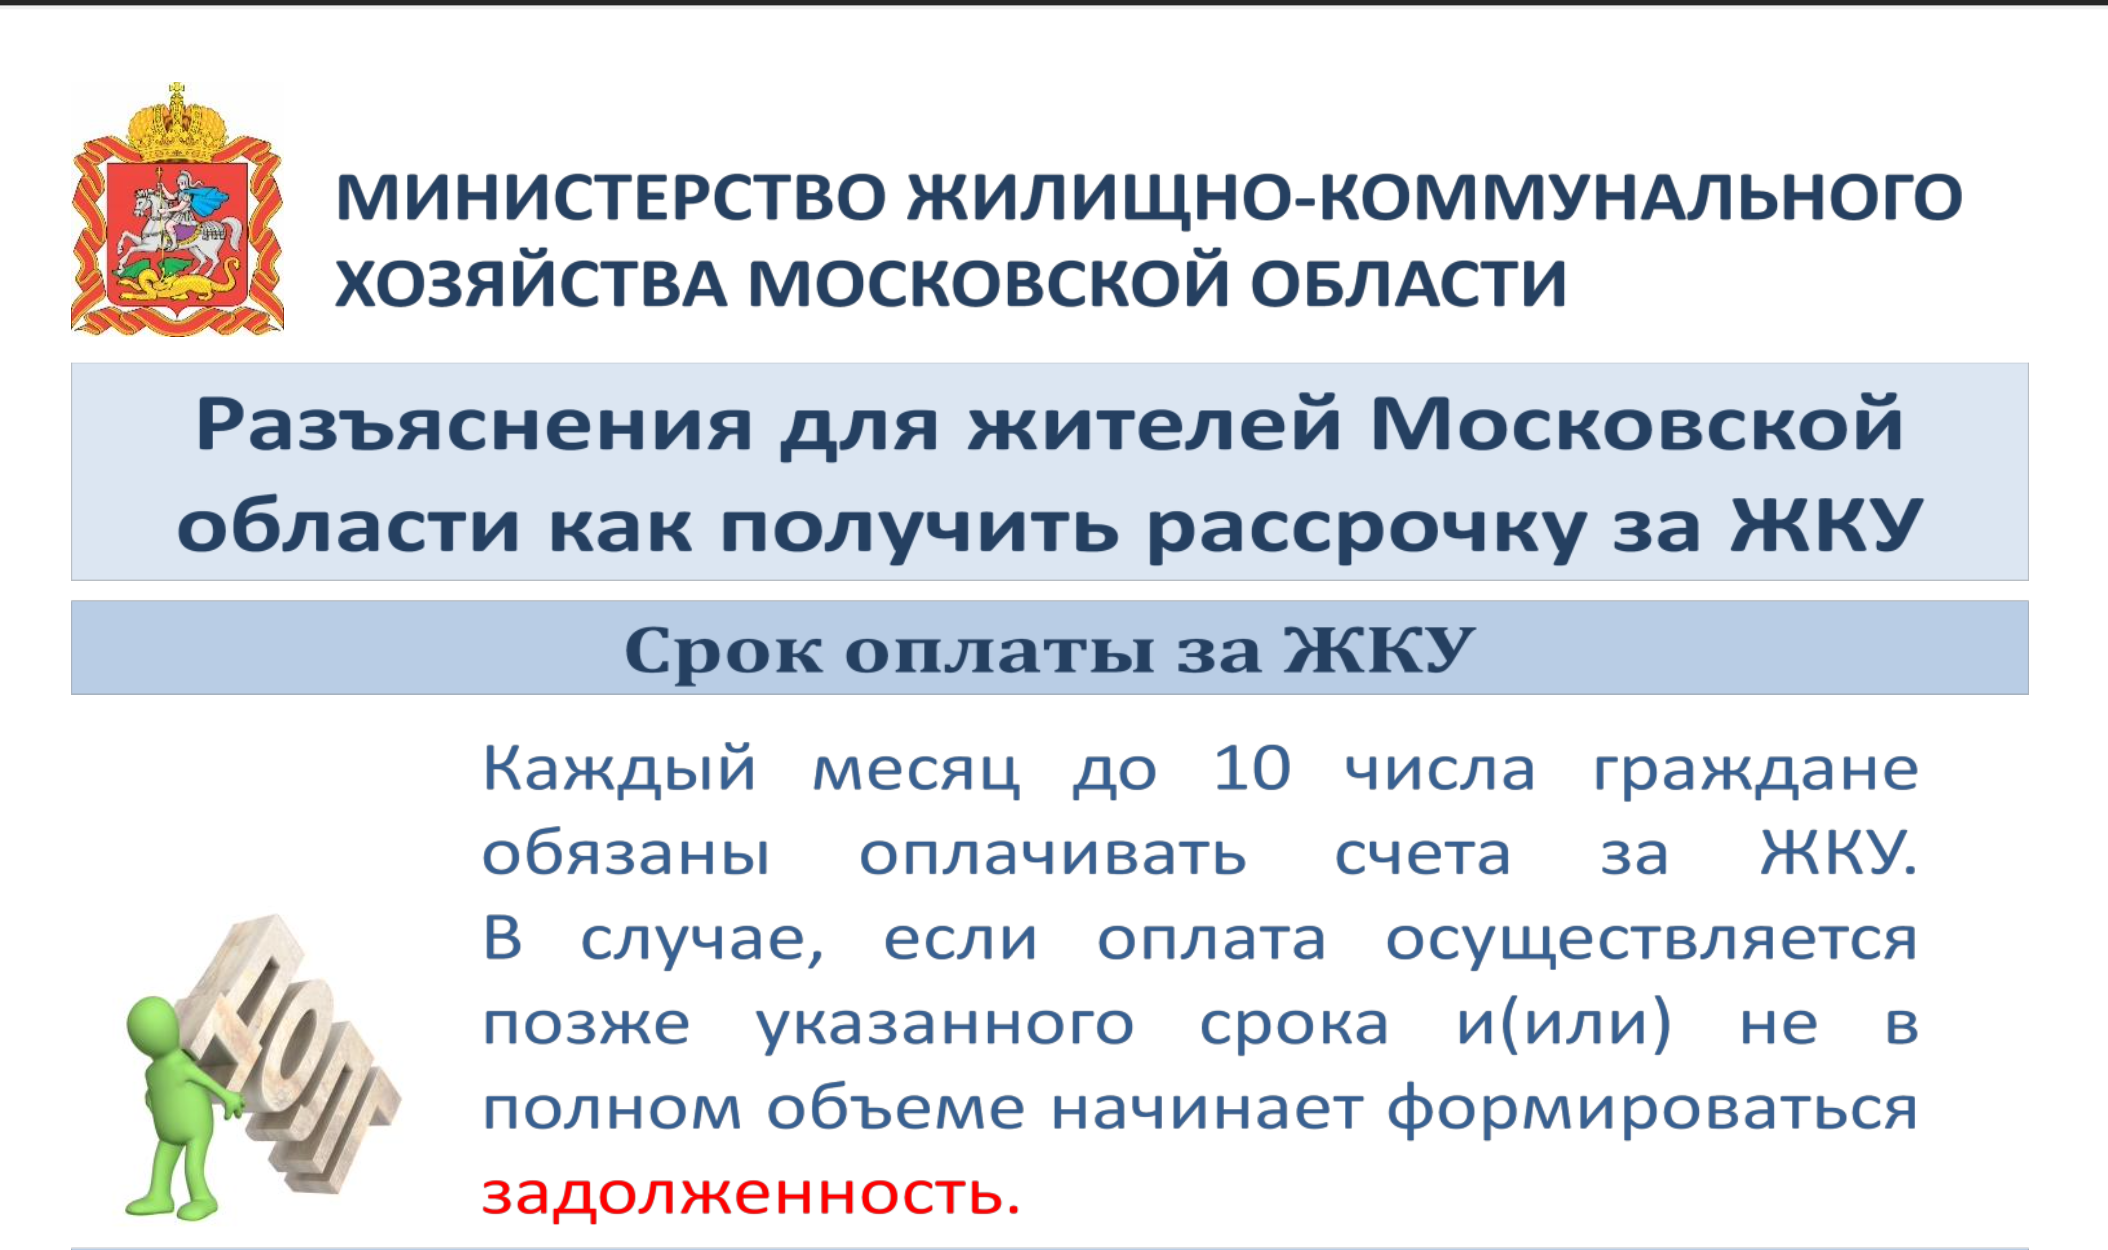 Разъяснения для жителей Московской области как получить рассрочку за ЖКУ